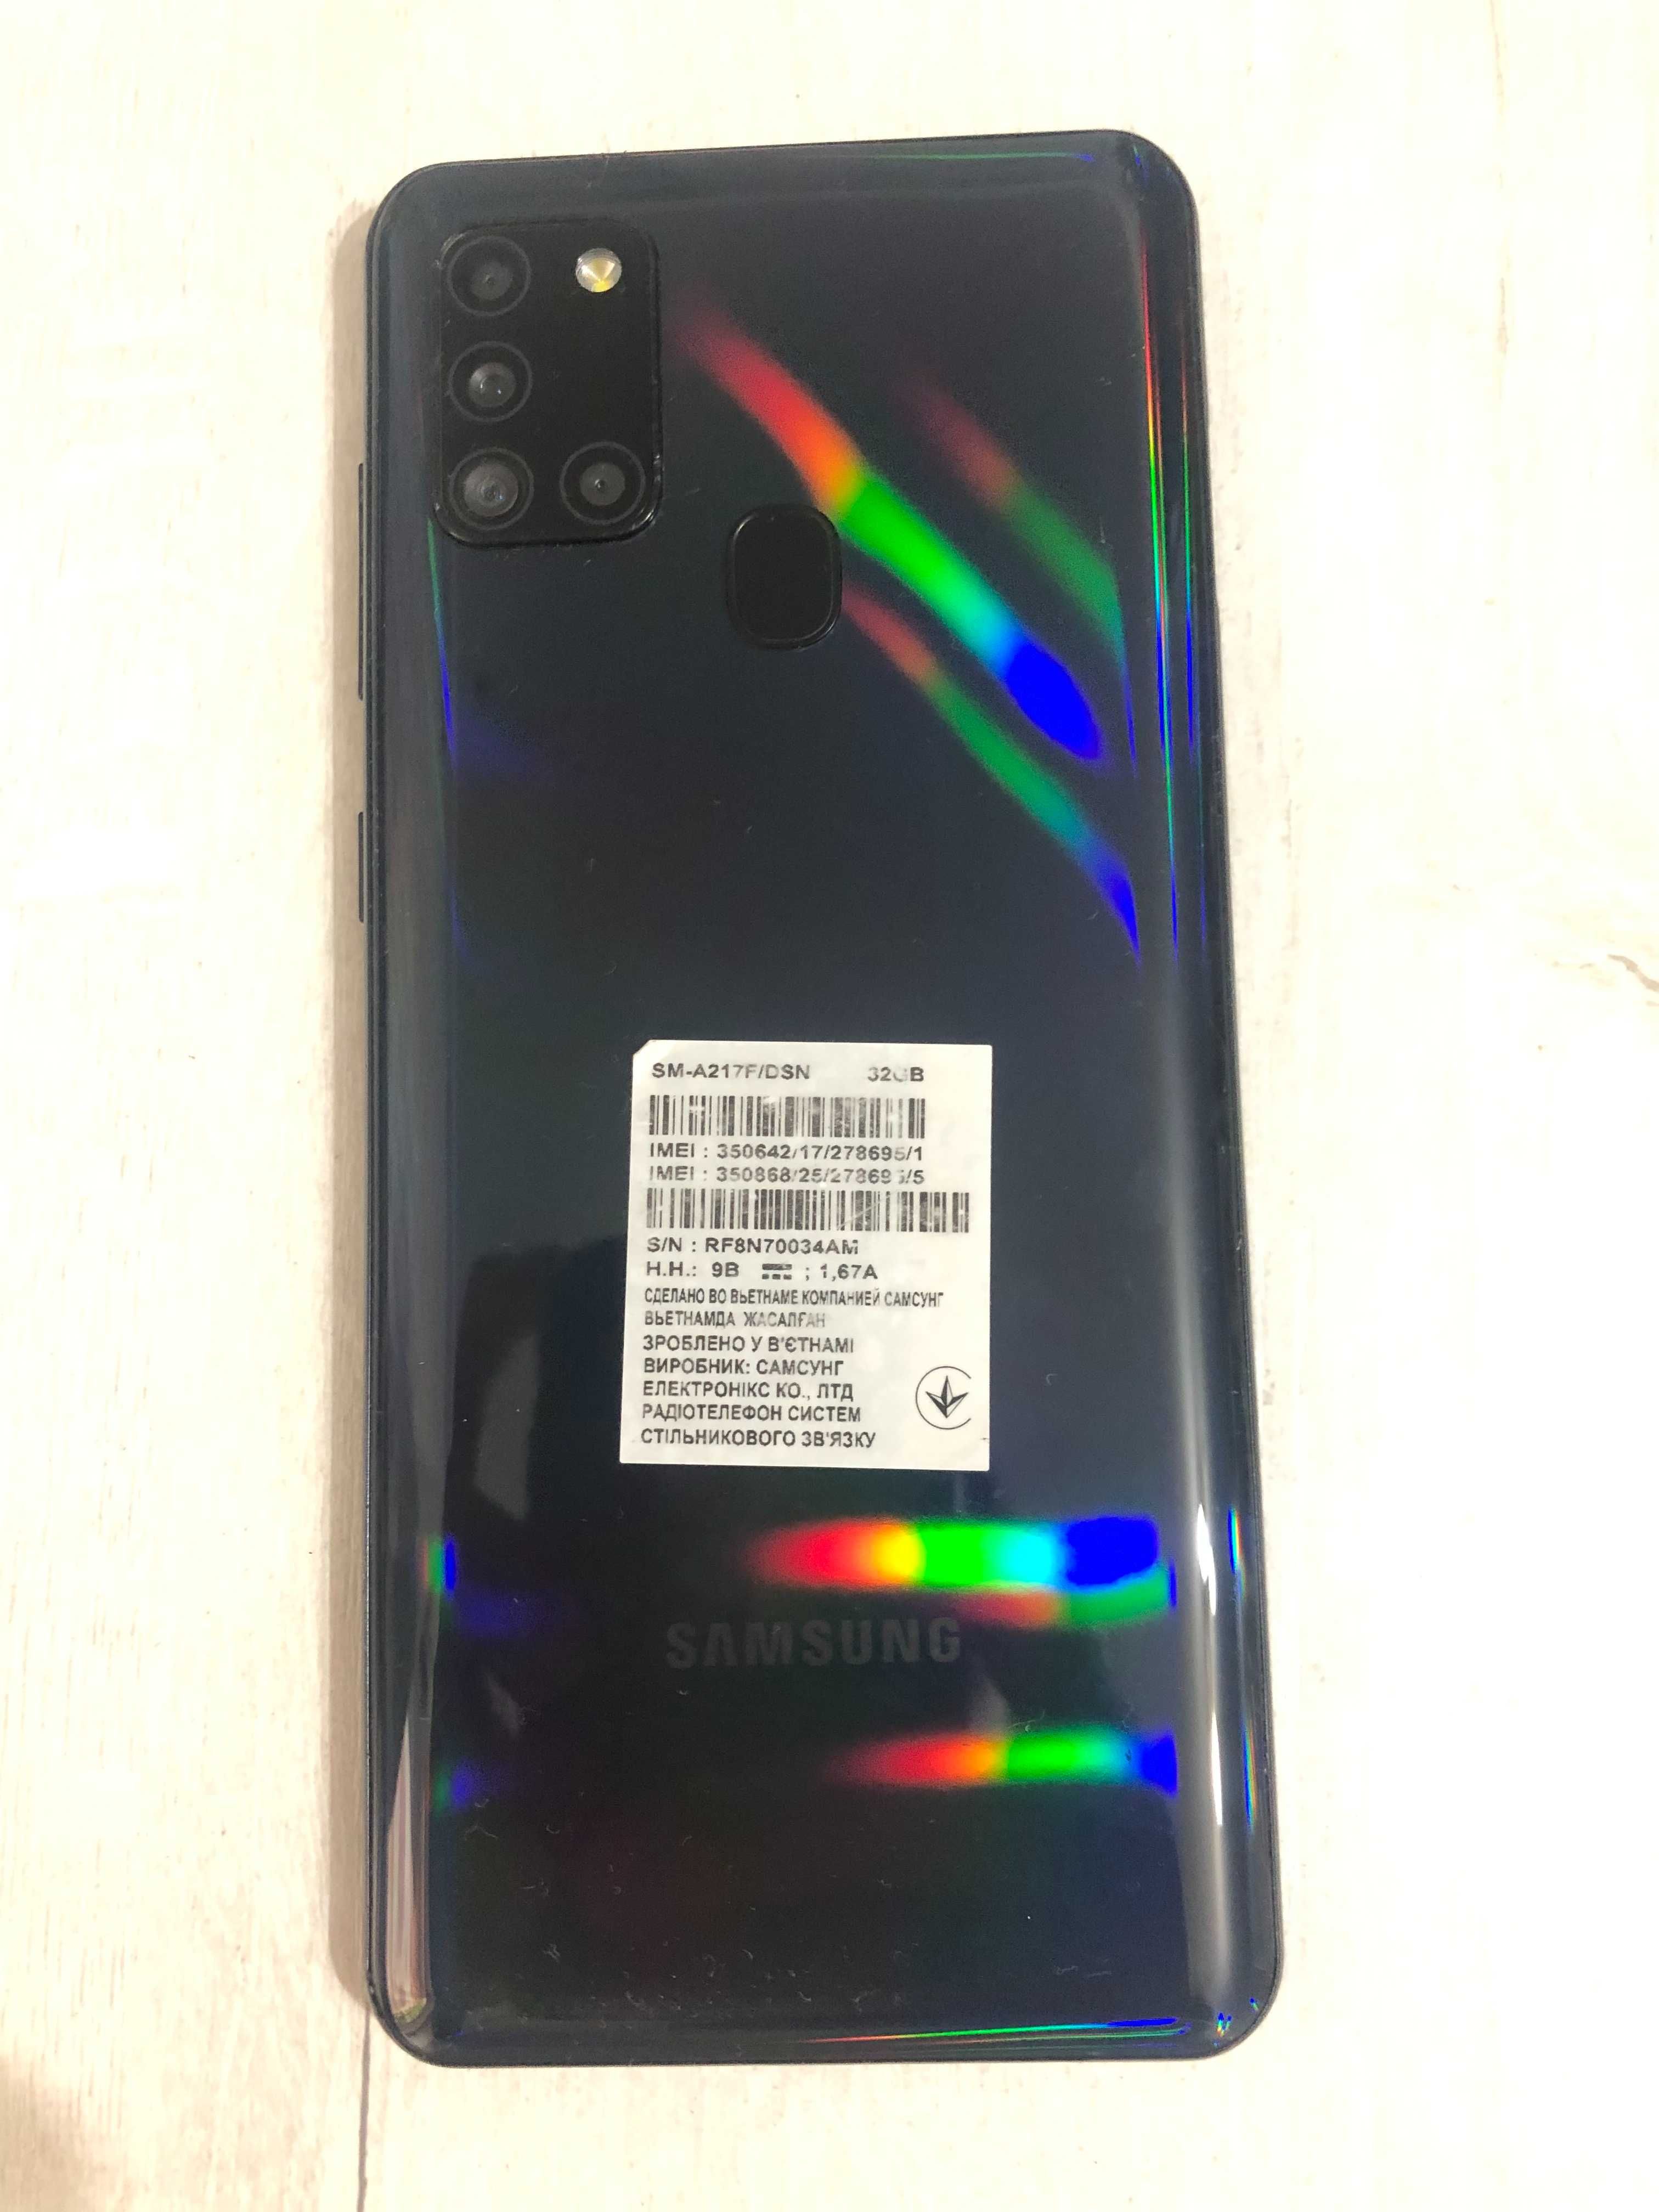 Samsung Galaxy A21s 32GB - 899,000 so'm